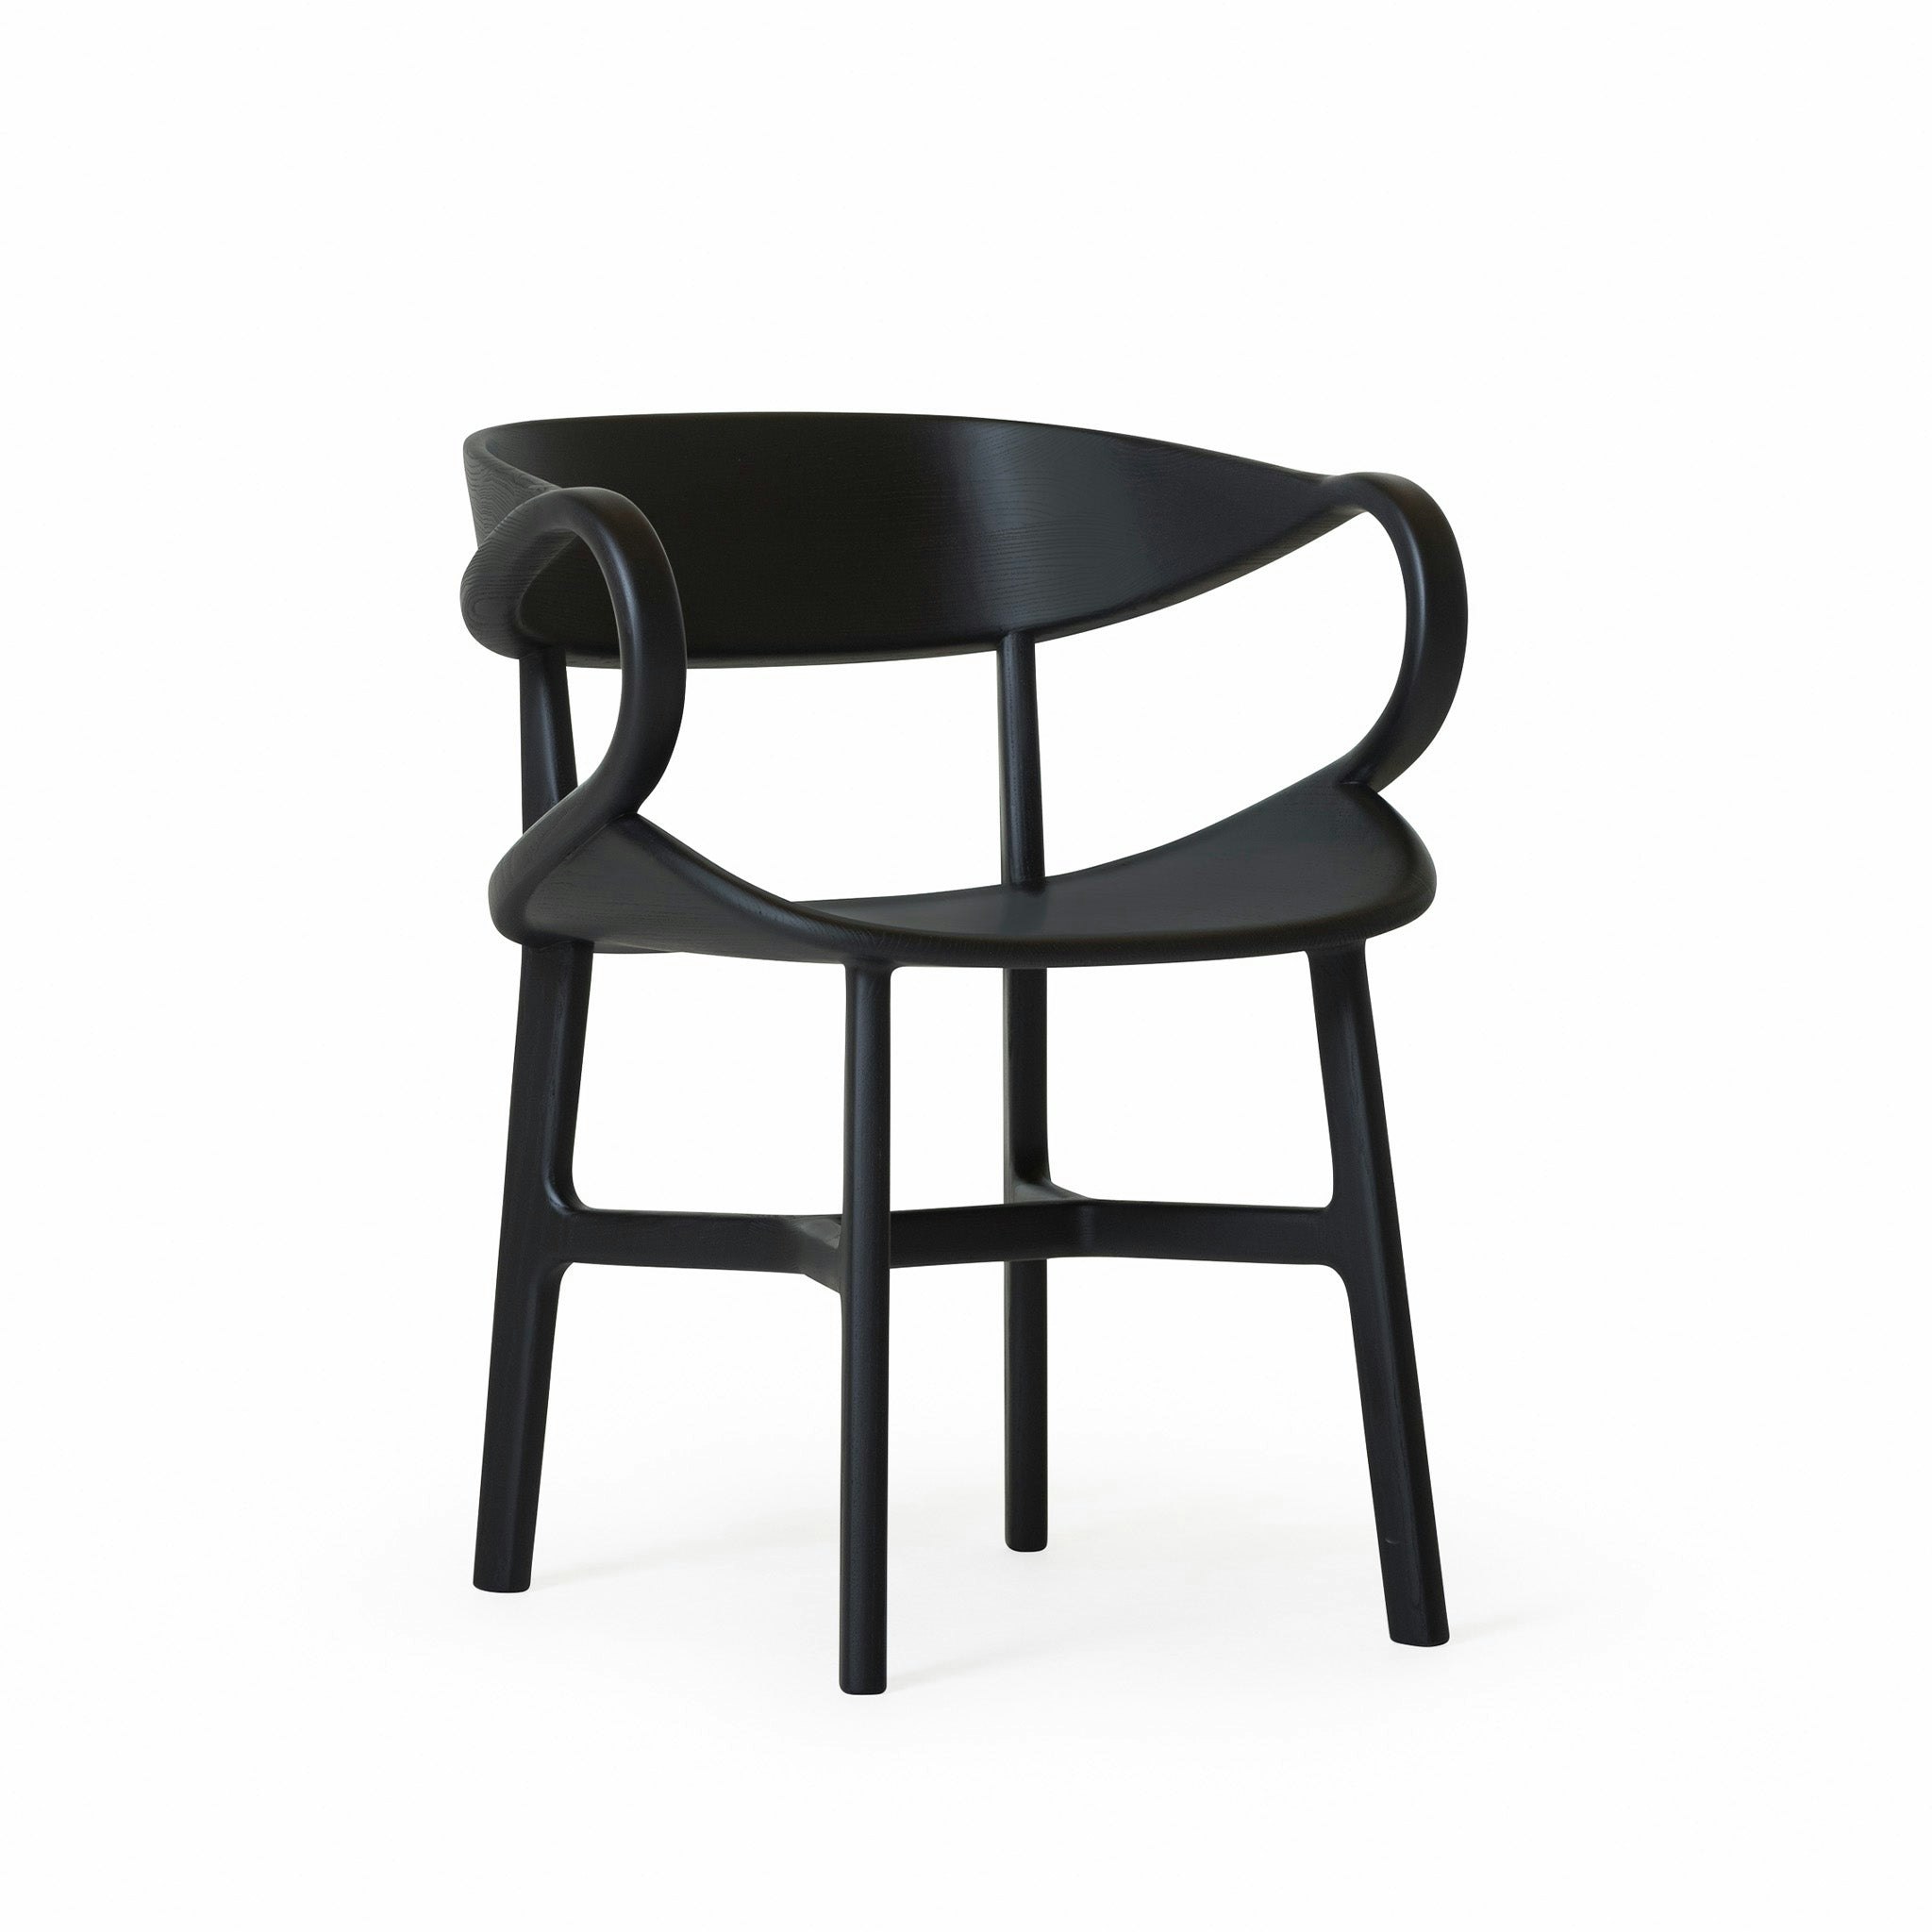 Vivien Chair by Luca Nichetto